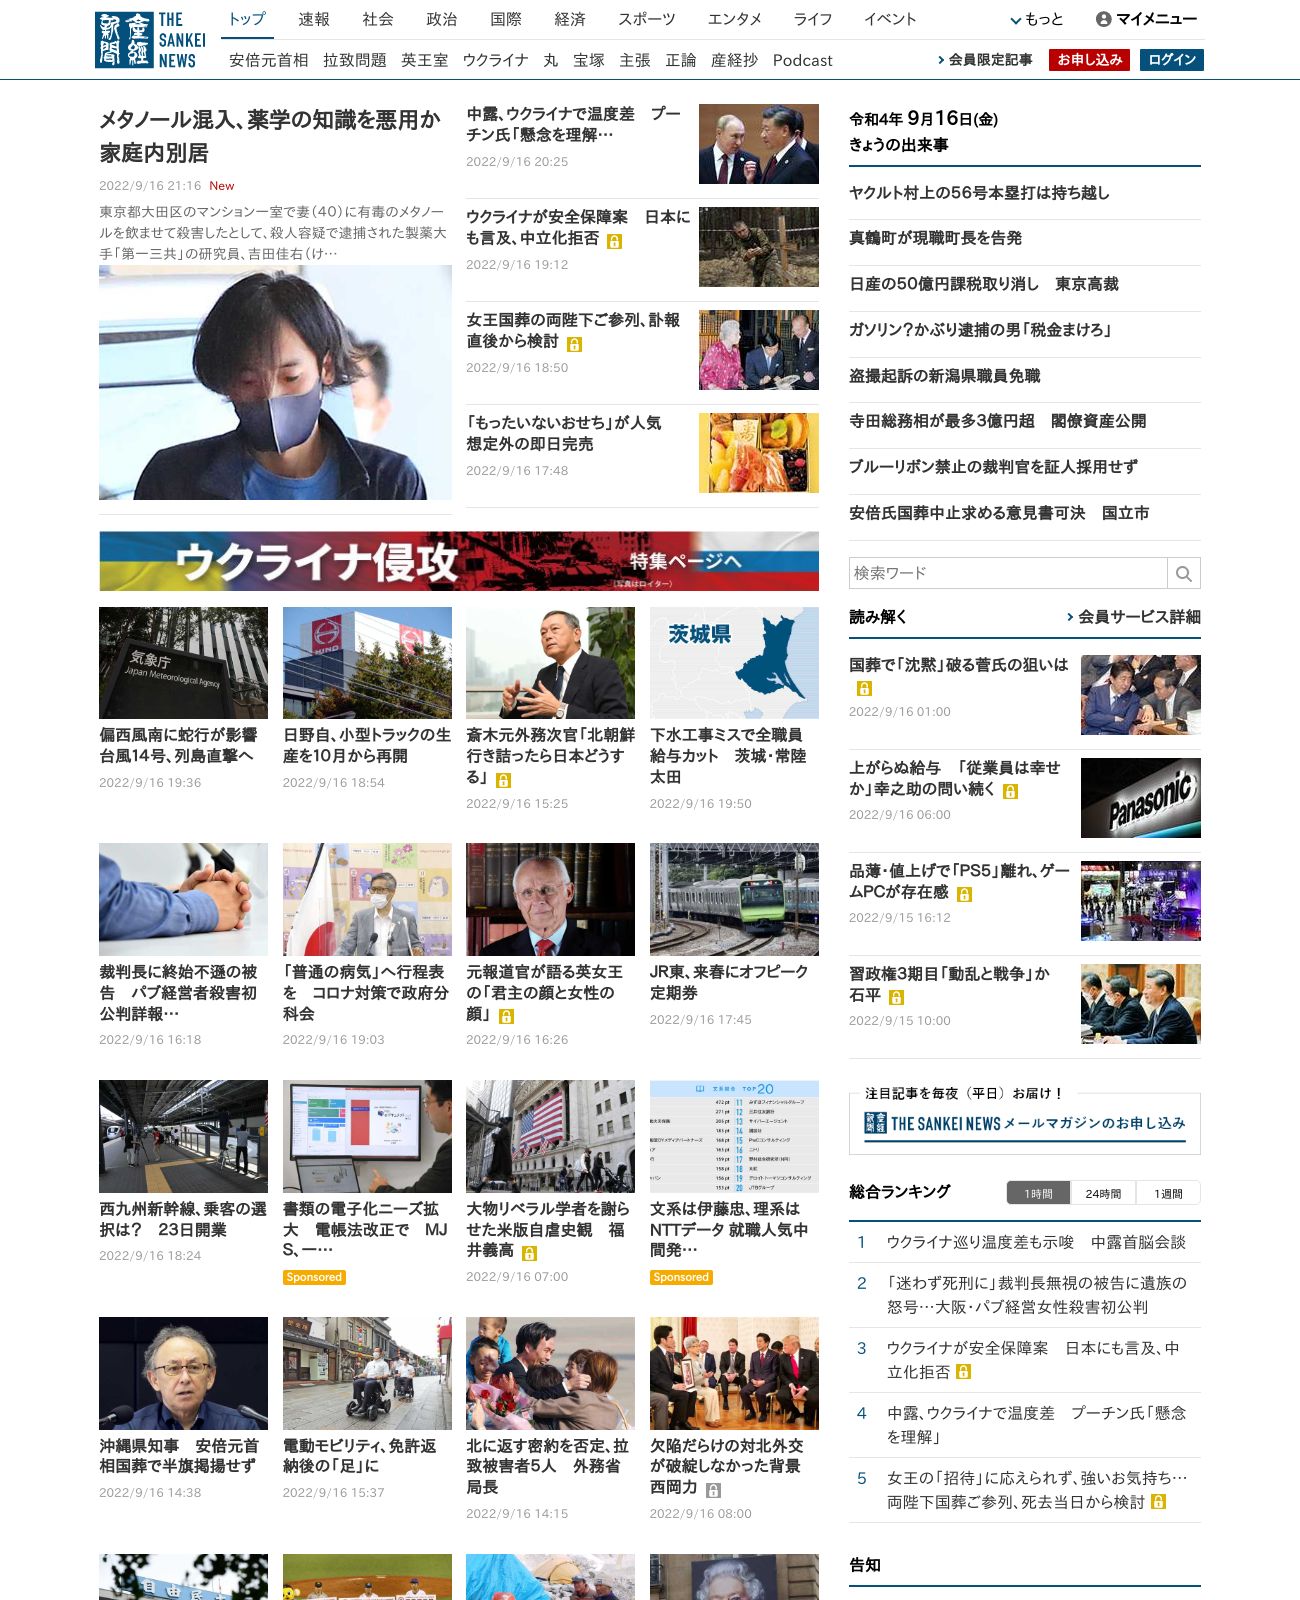 Sankei Shimbun at 2022-09-16 22:02:57+09:00 local time